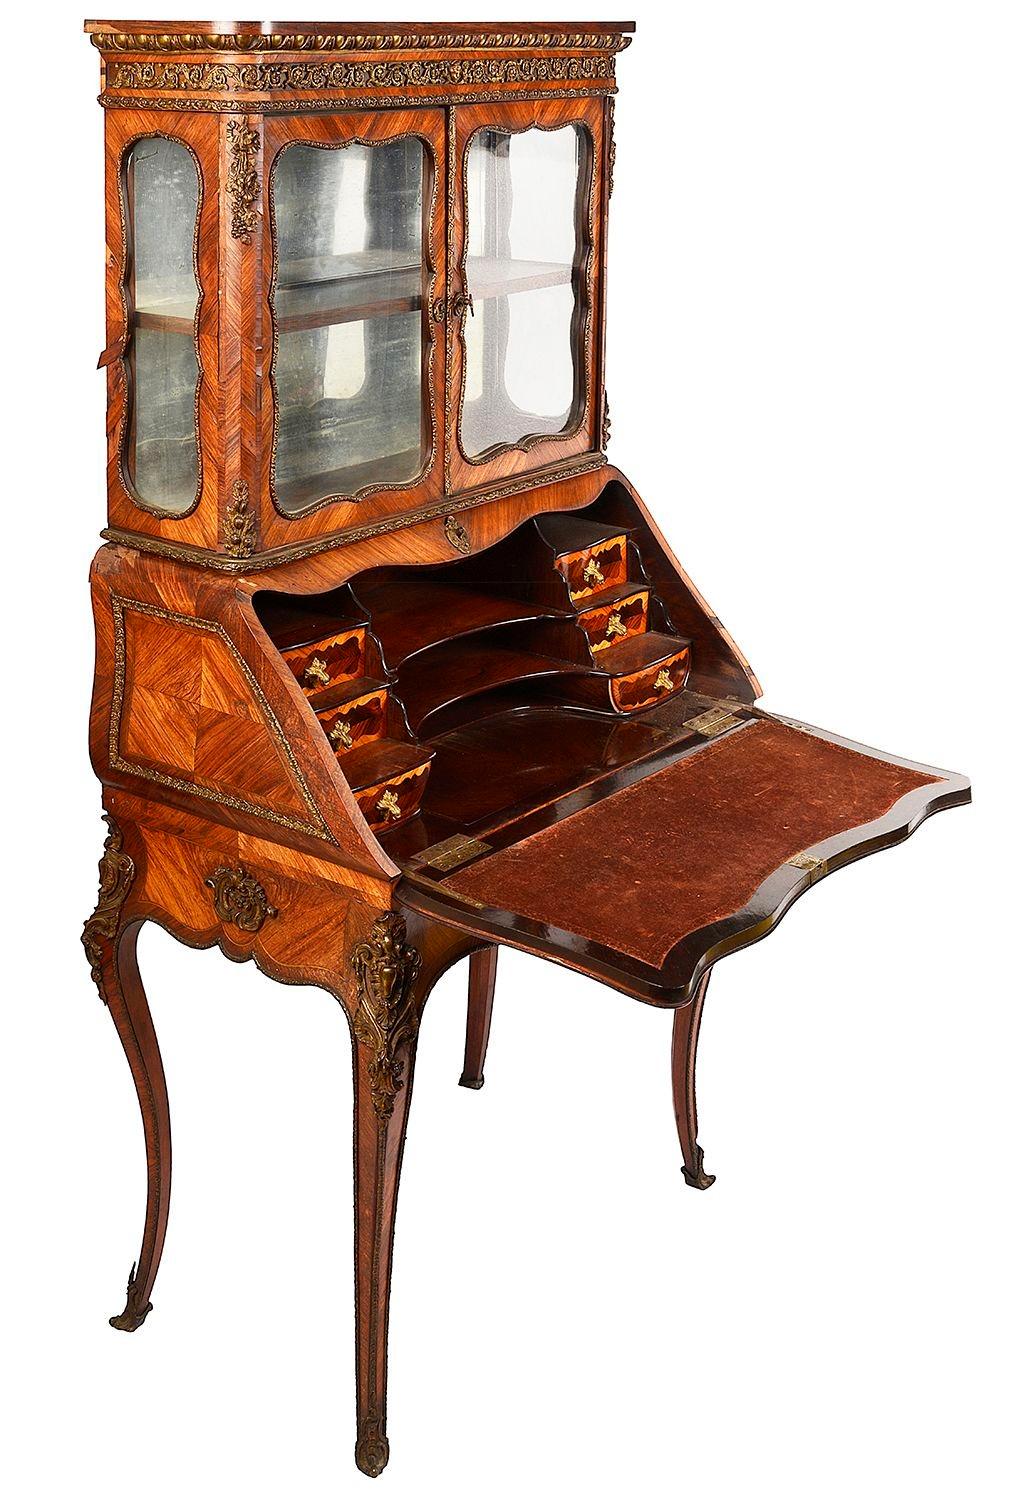 Eine sehr gute Qualität späten 19. Jahrhundert Französisch Kingwood Ormolu montiert Bureau de Dame. Darüber verglaste Türen, die sich öffnen lassen, um Schubladen und Taubenlöcher freizulegen, und eine eingelassene Schreibtafel aus Samt, eine